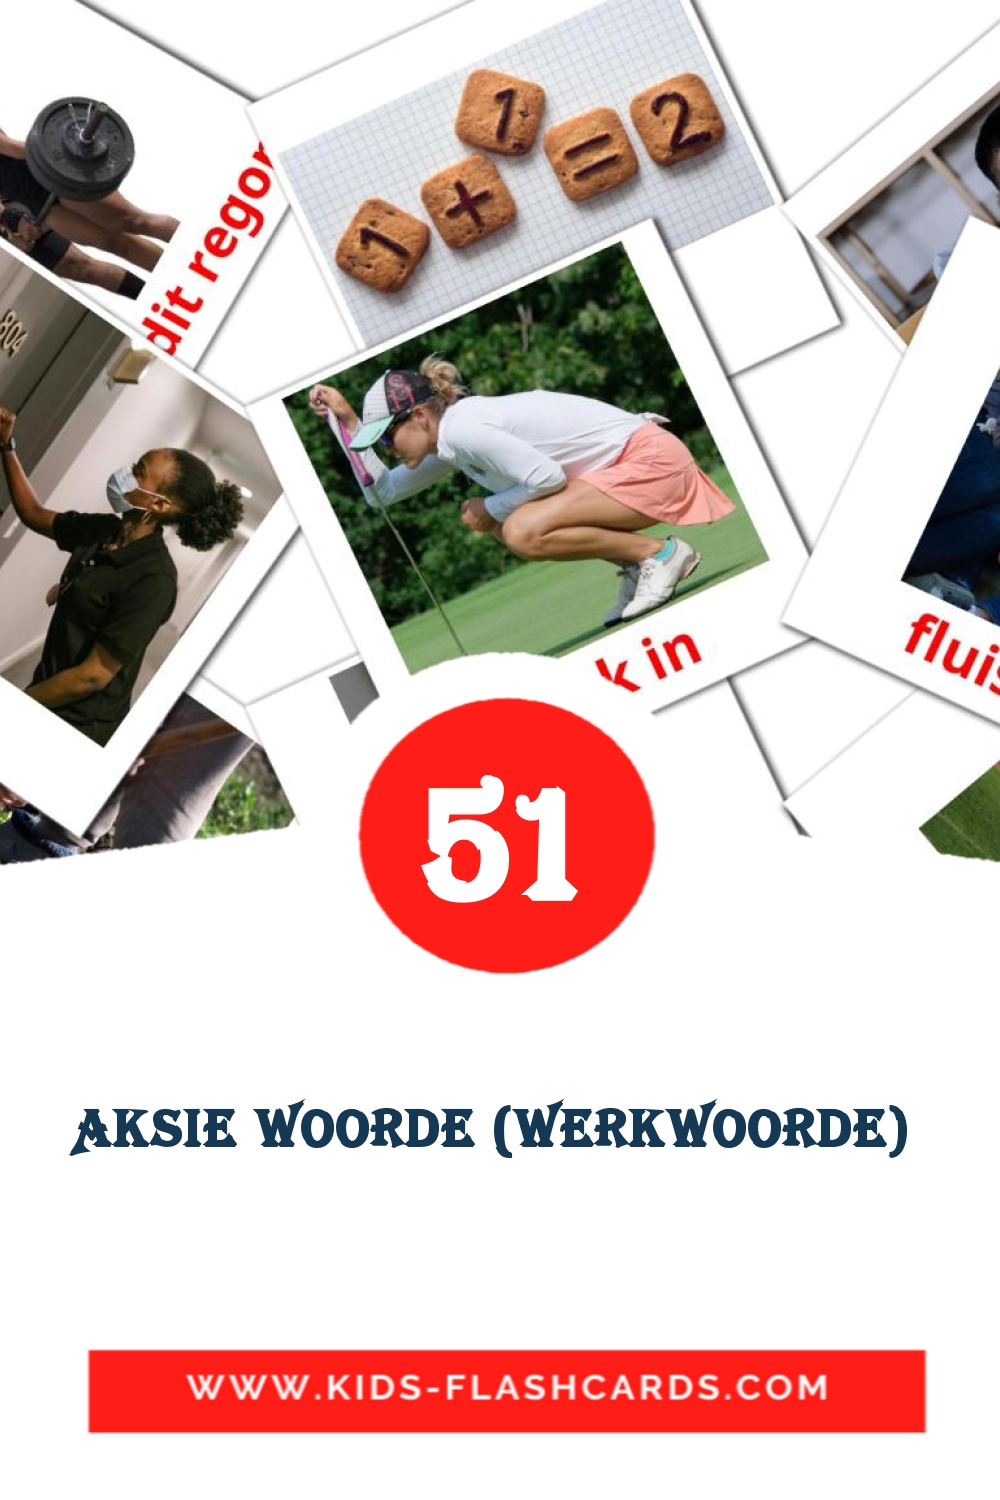 54 cartes illustrées de Aksie woorde (werkwoorde)  pour la maternelle en afrikaans